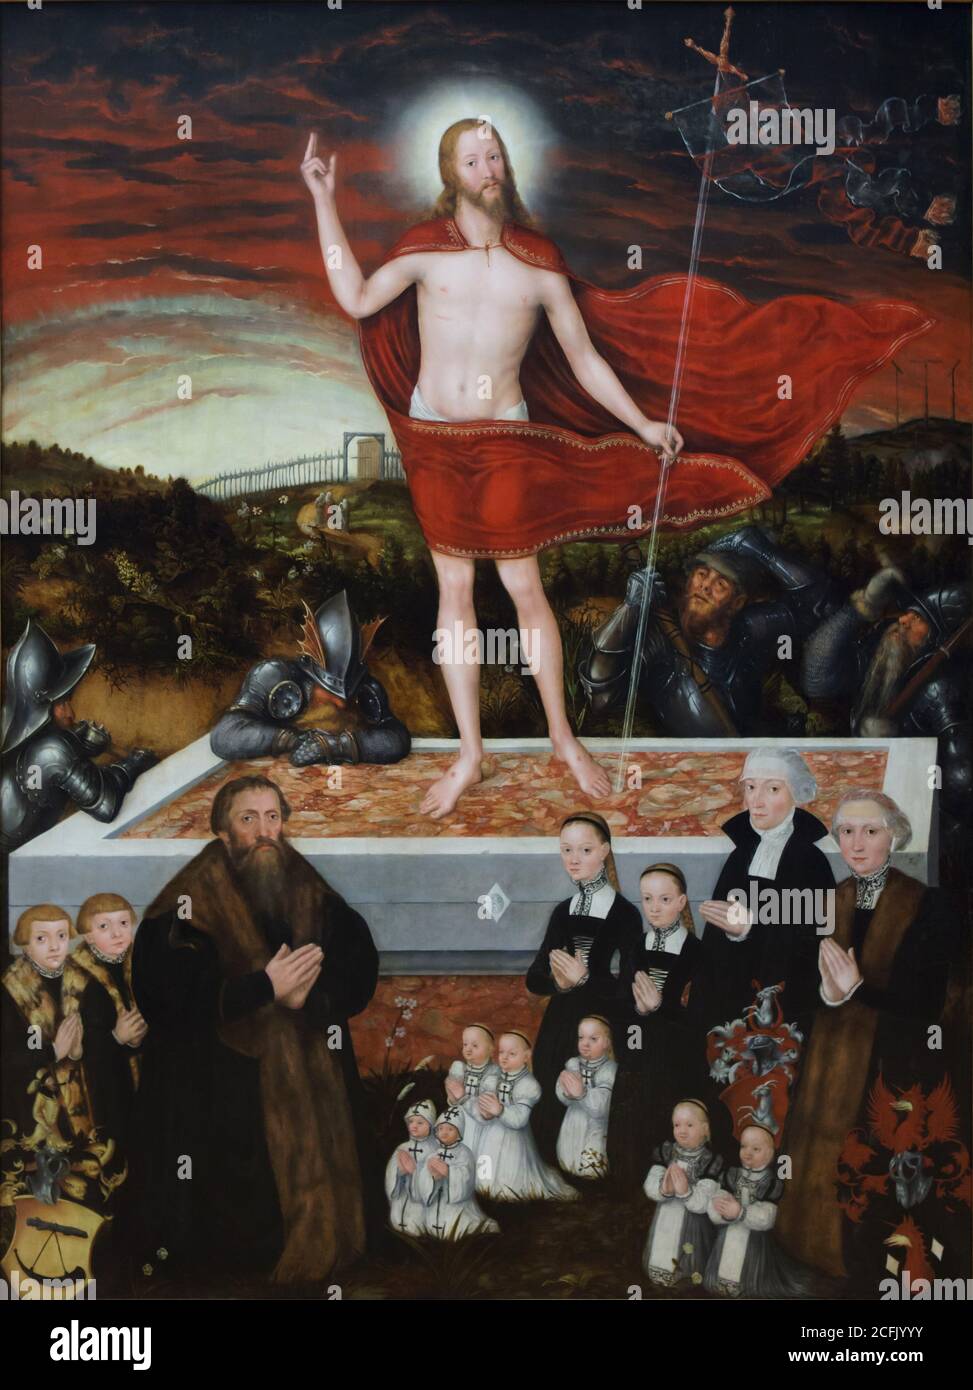 Peinture 'Résurrection du Christ' par le peintre allemand de la Renaissance Lucas Cranach le jeune (1557) exposé au Musée der bildenden Künste (Musée des Beaux-Arts) à Leipzig, Saxe, Allemagne. Banque D'Images